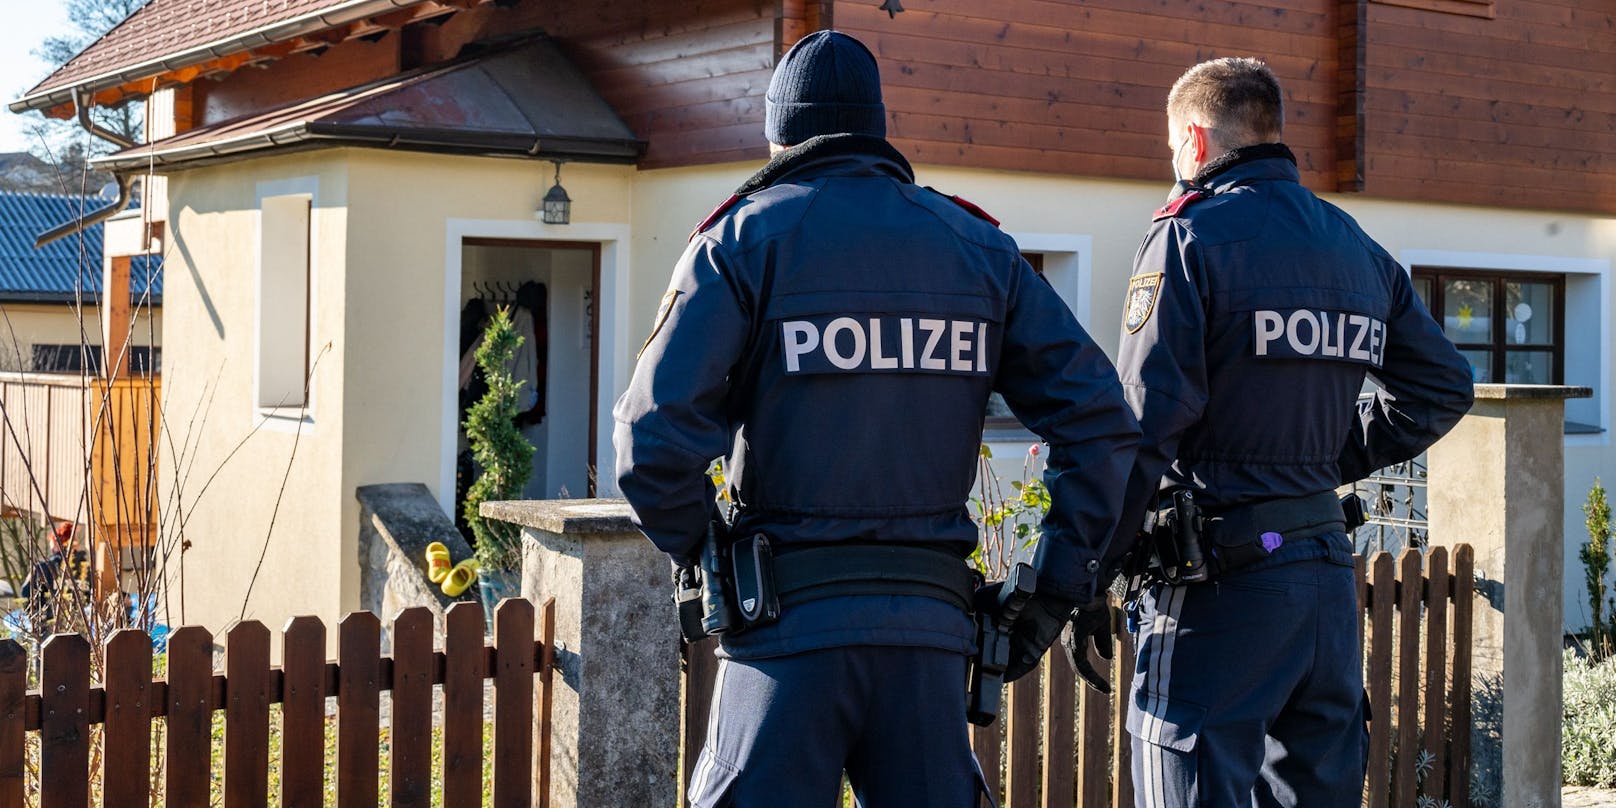 Polizei am Tatort: Im "Zaubertal" bei Linz wurde eine 25-jährige Frau getötet.